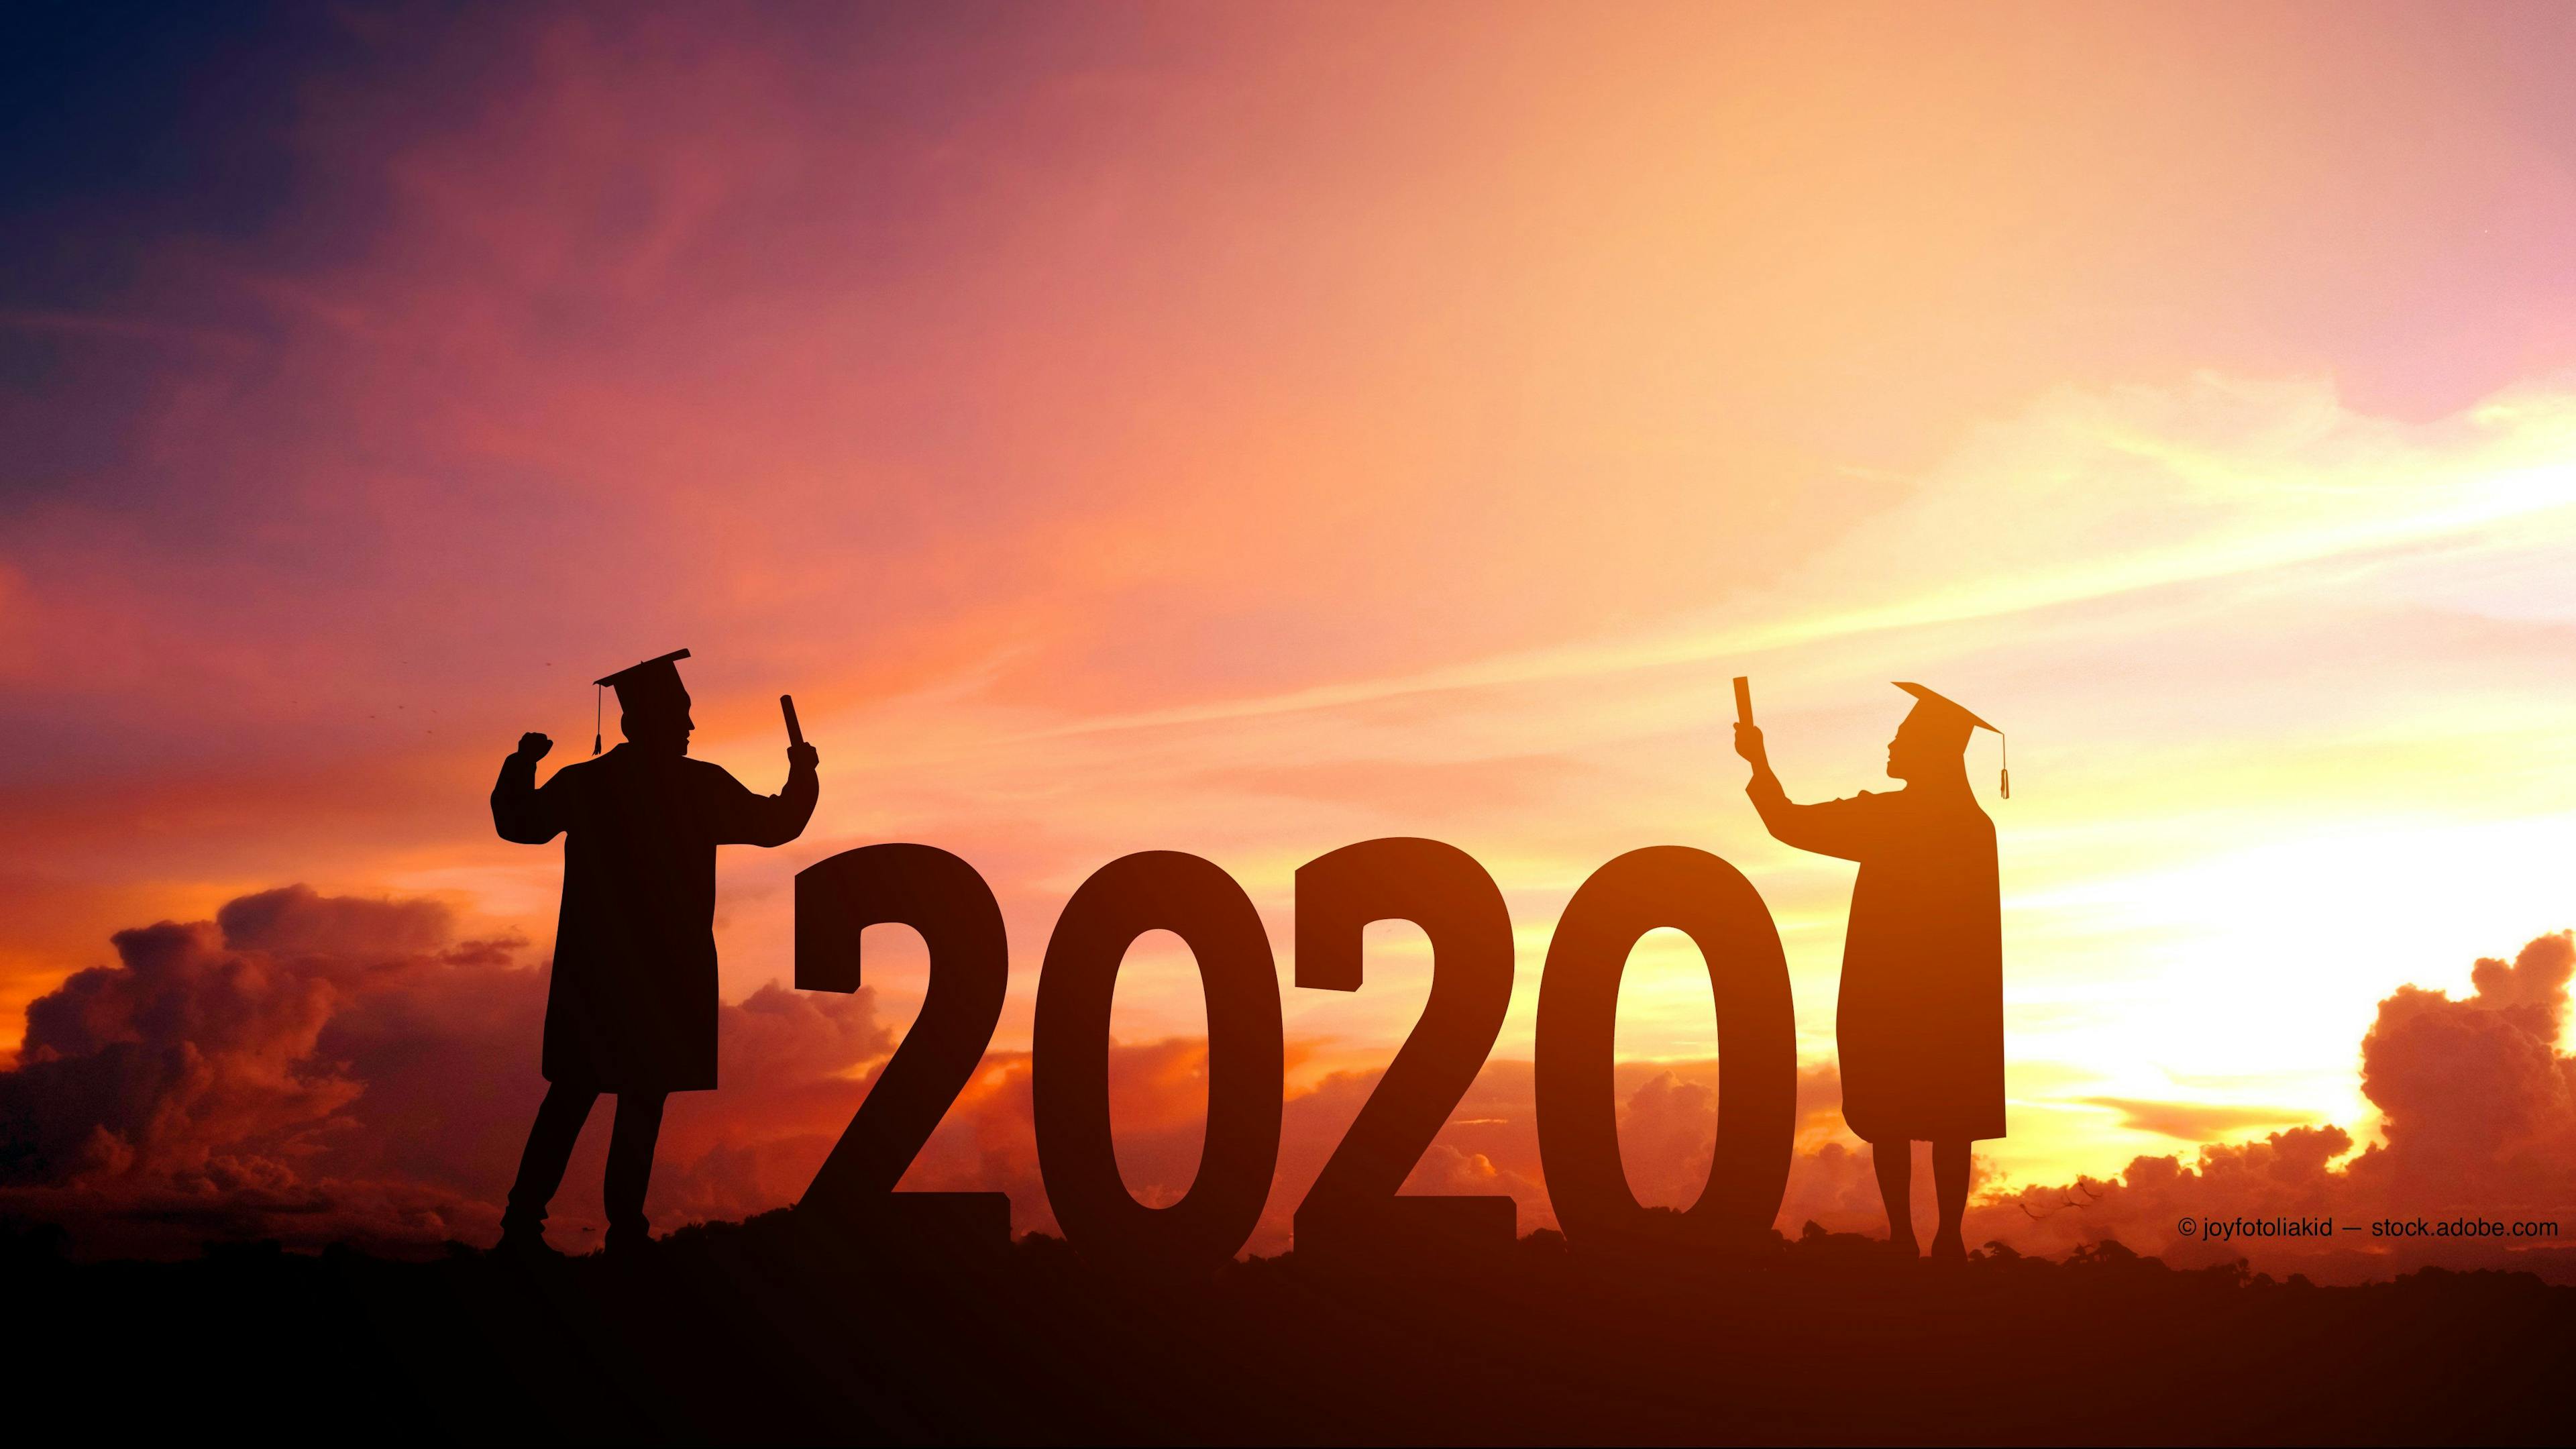 2020 graduates